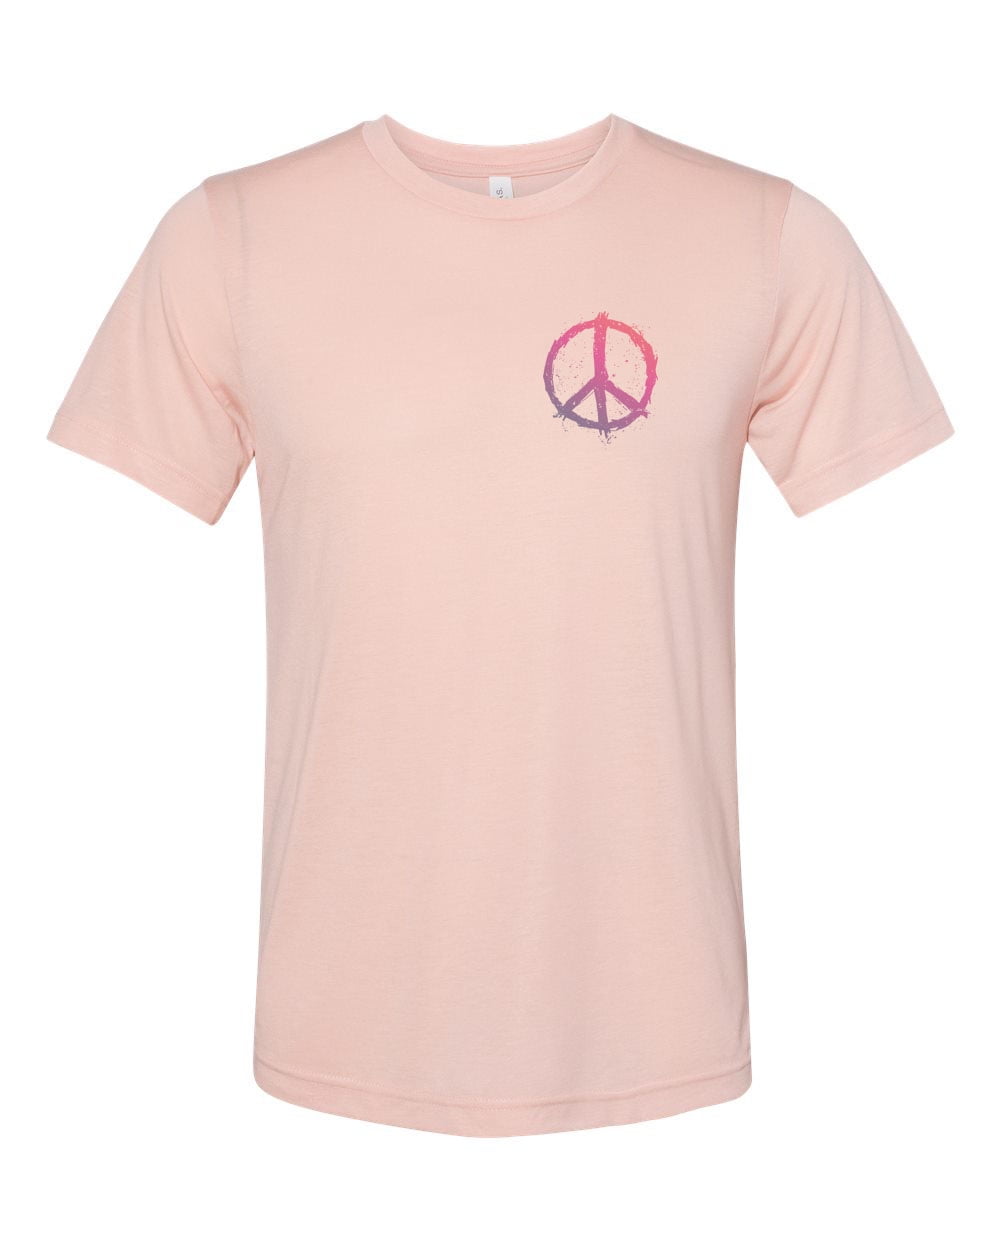 Vintage Peace T Shirt Large